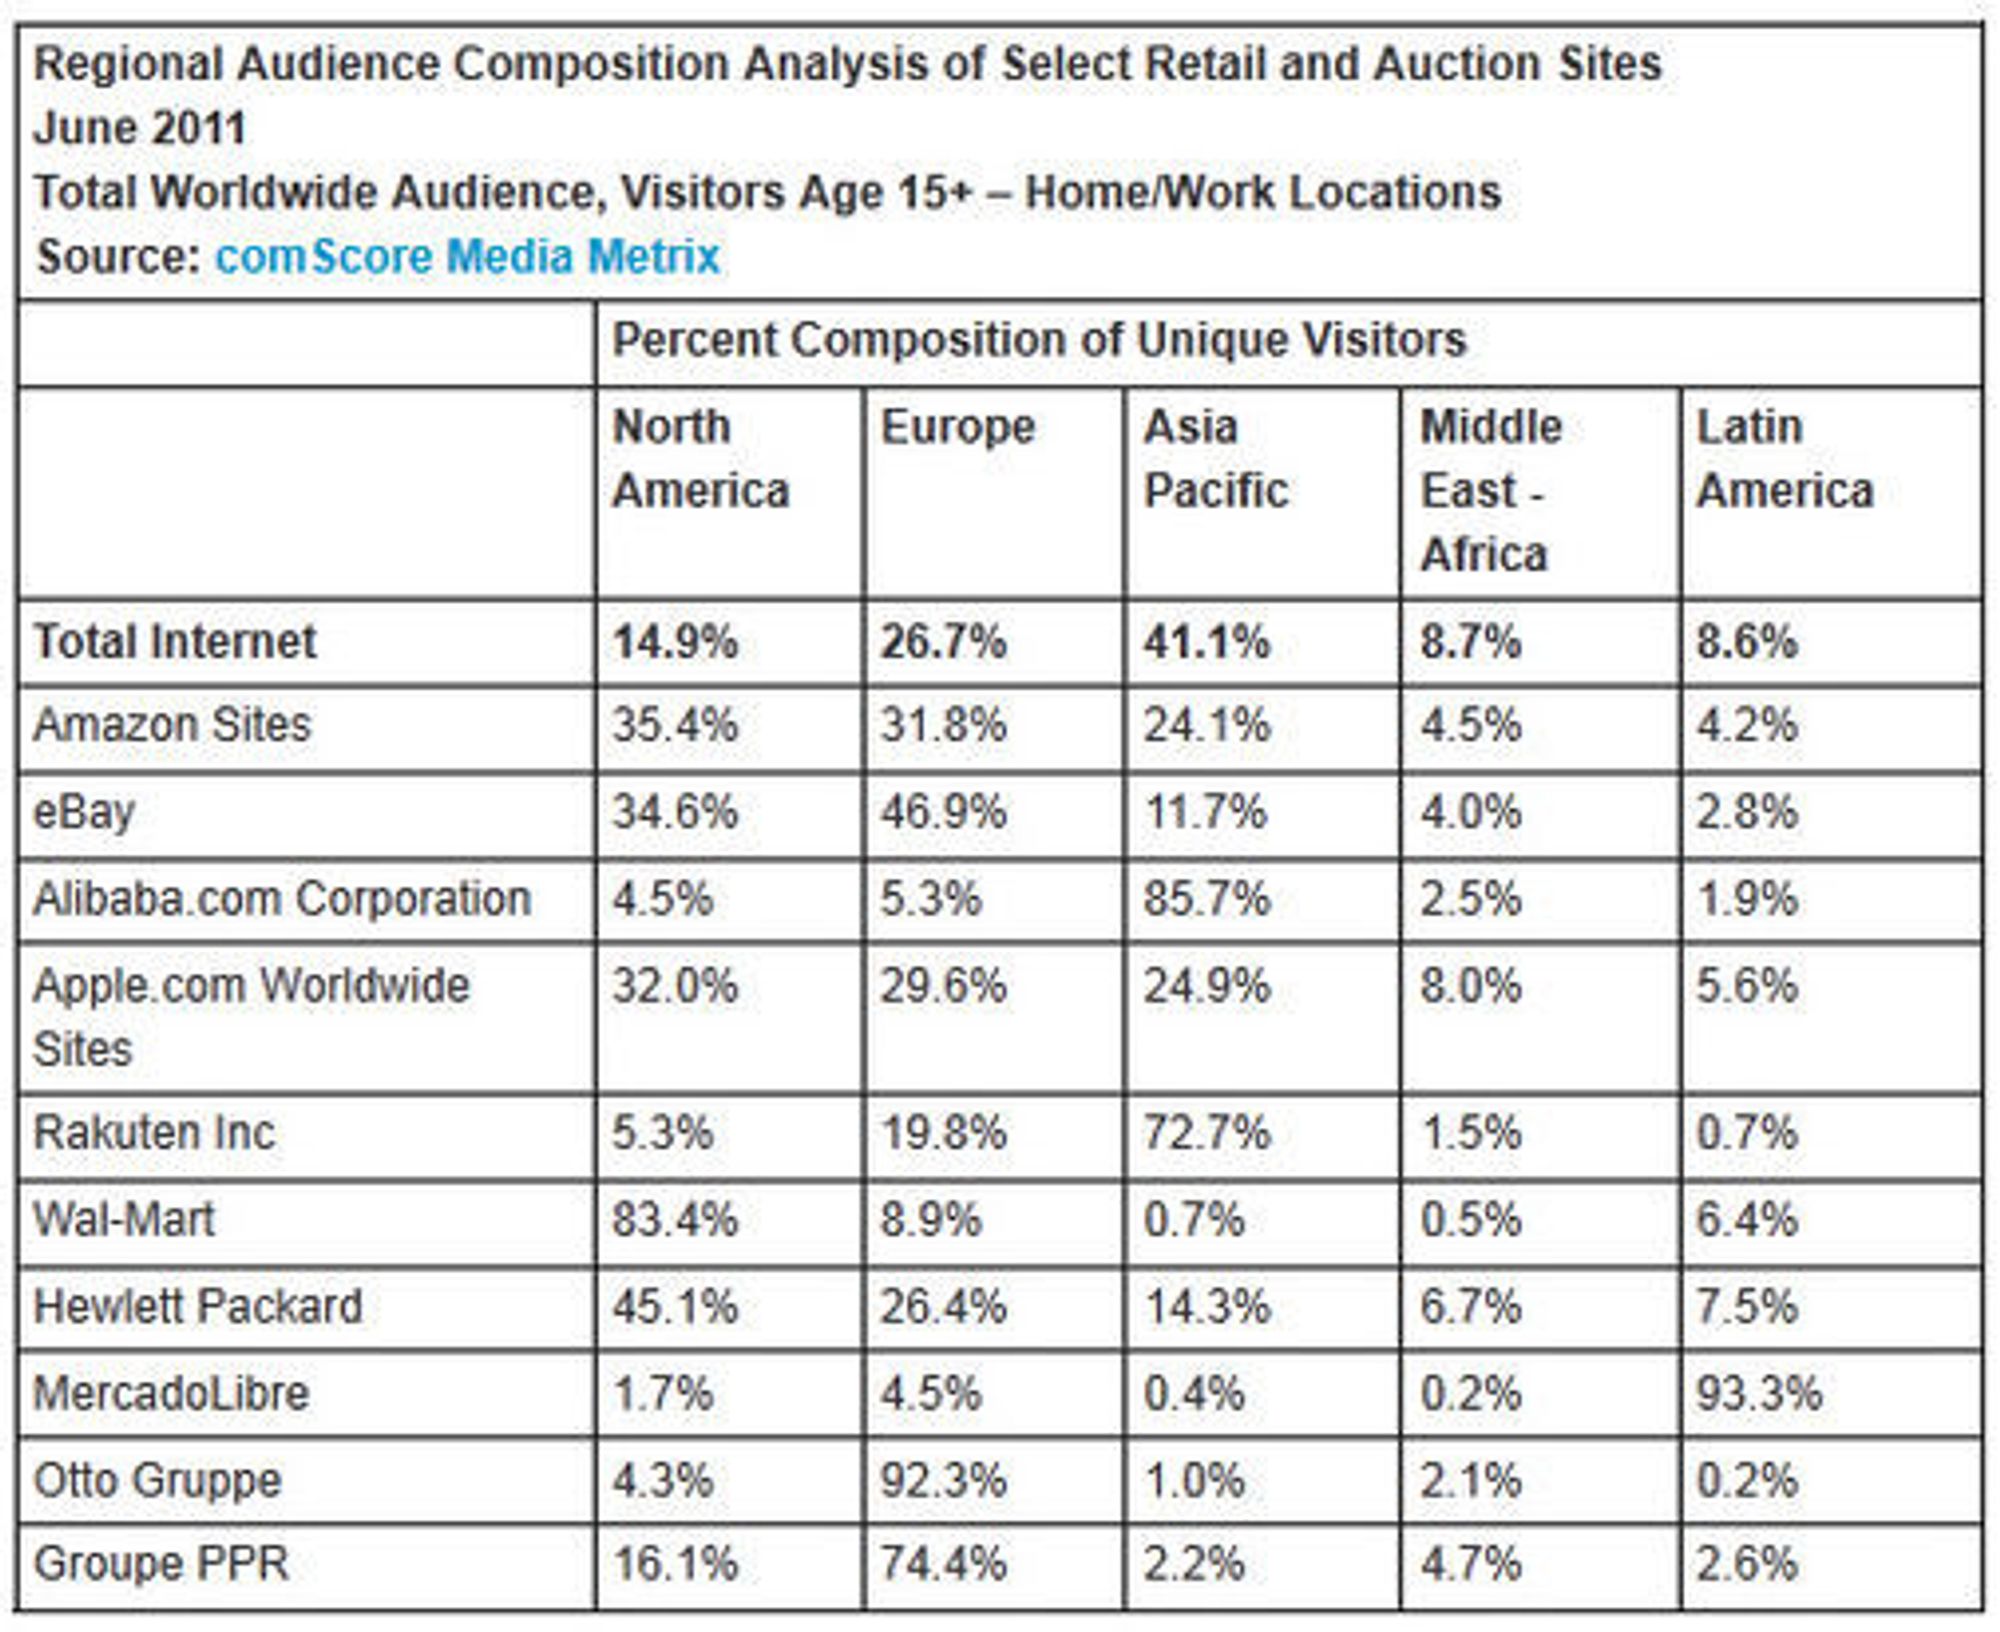 Regional inndeling av besøkende på verdens største nettbutikker og auksjonsnettsteder i juni 2011, ifølge comScore.